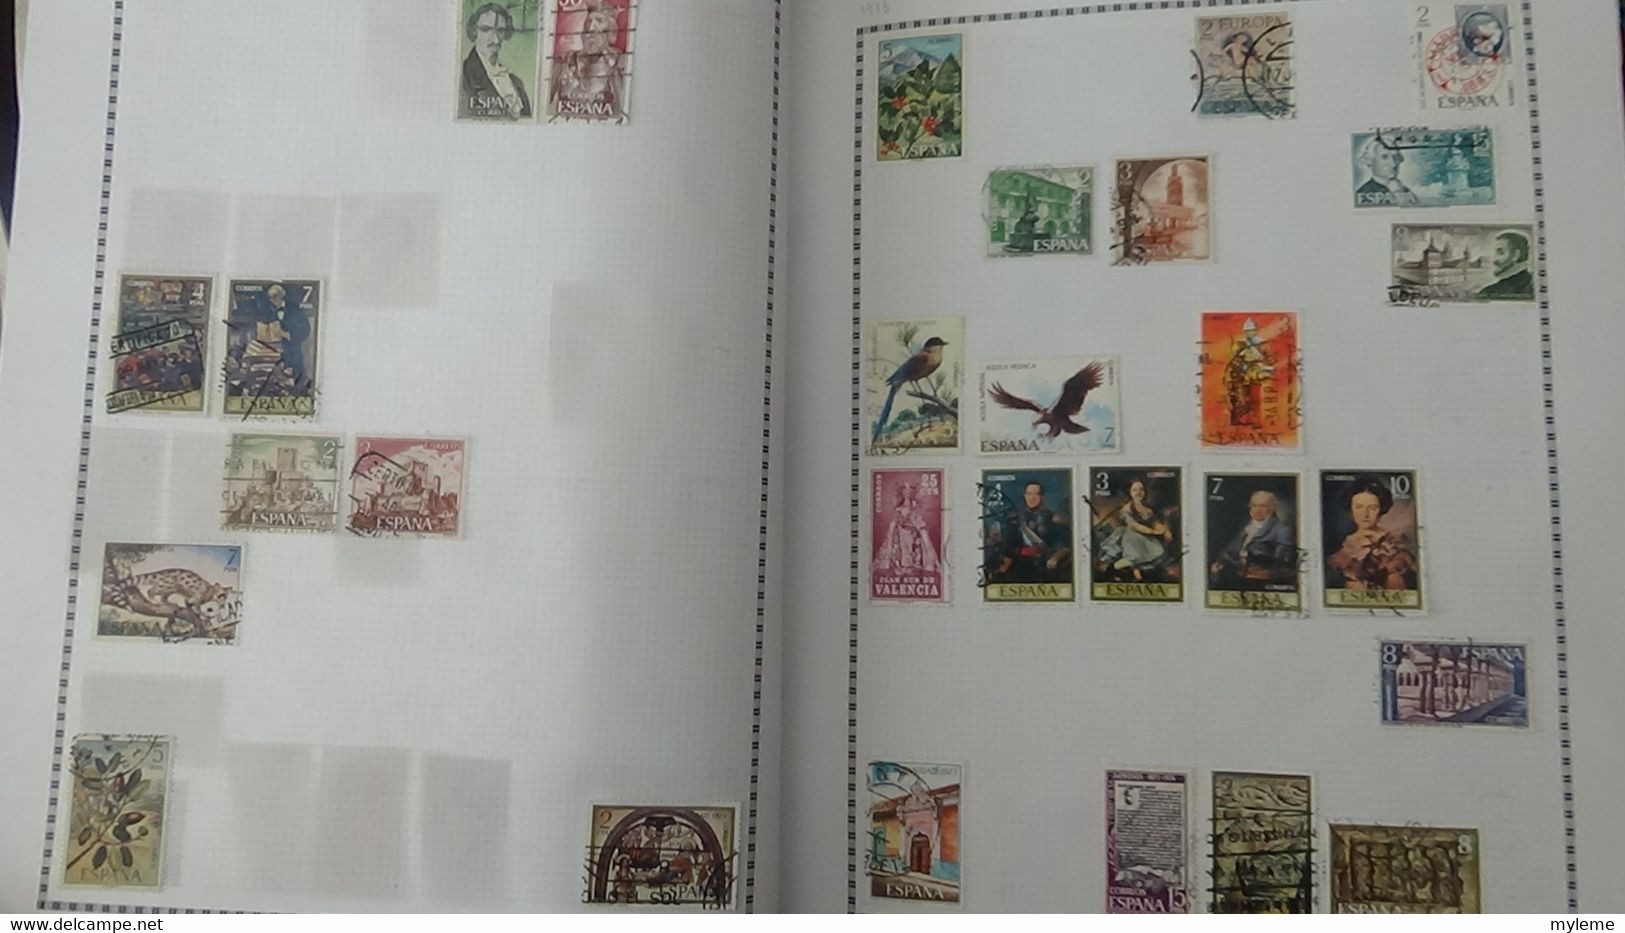 Y11 Collection de timbres oblitérés  de différents pays d'Europe Voir commentaires ...  A saisir !!!